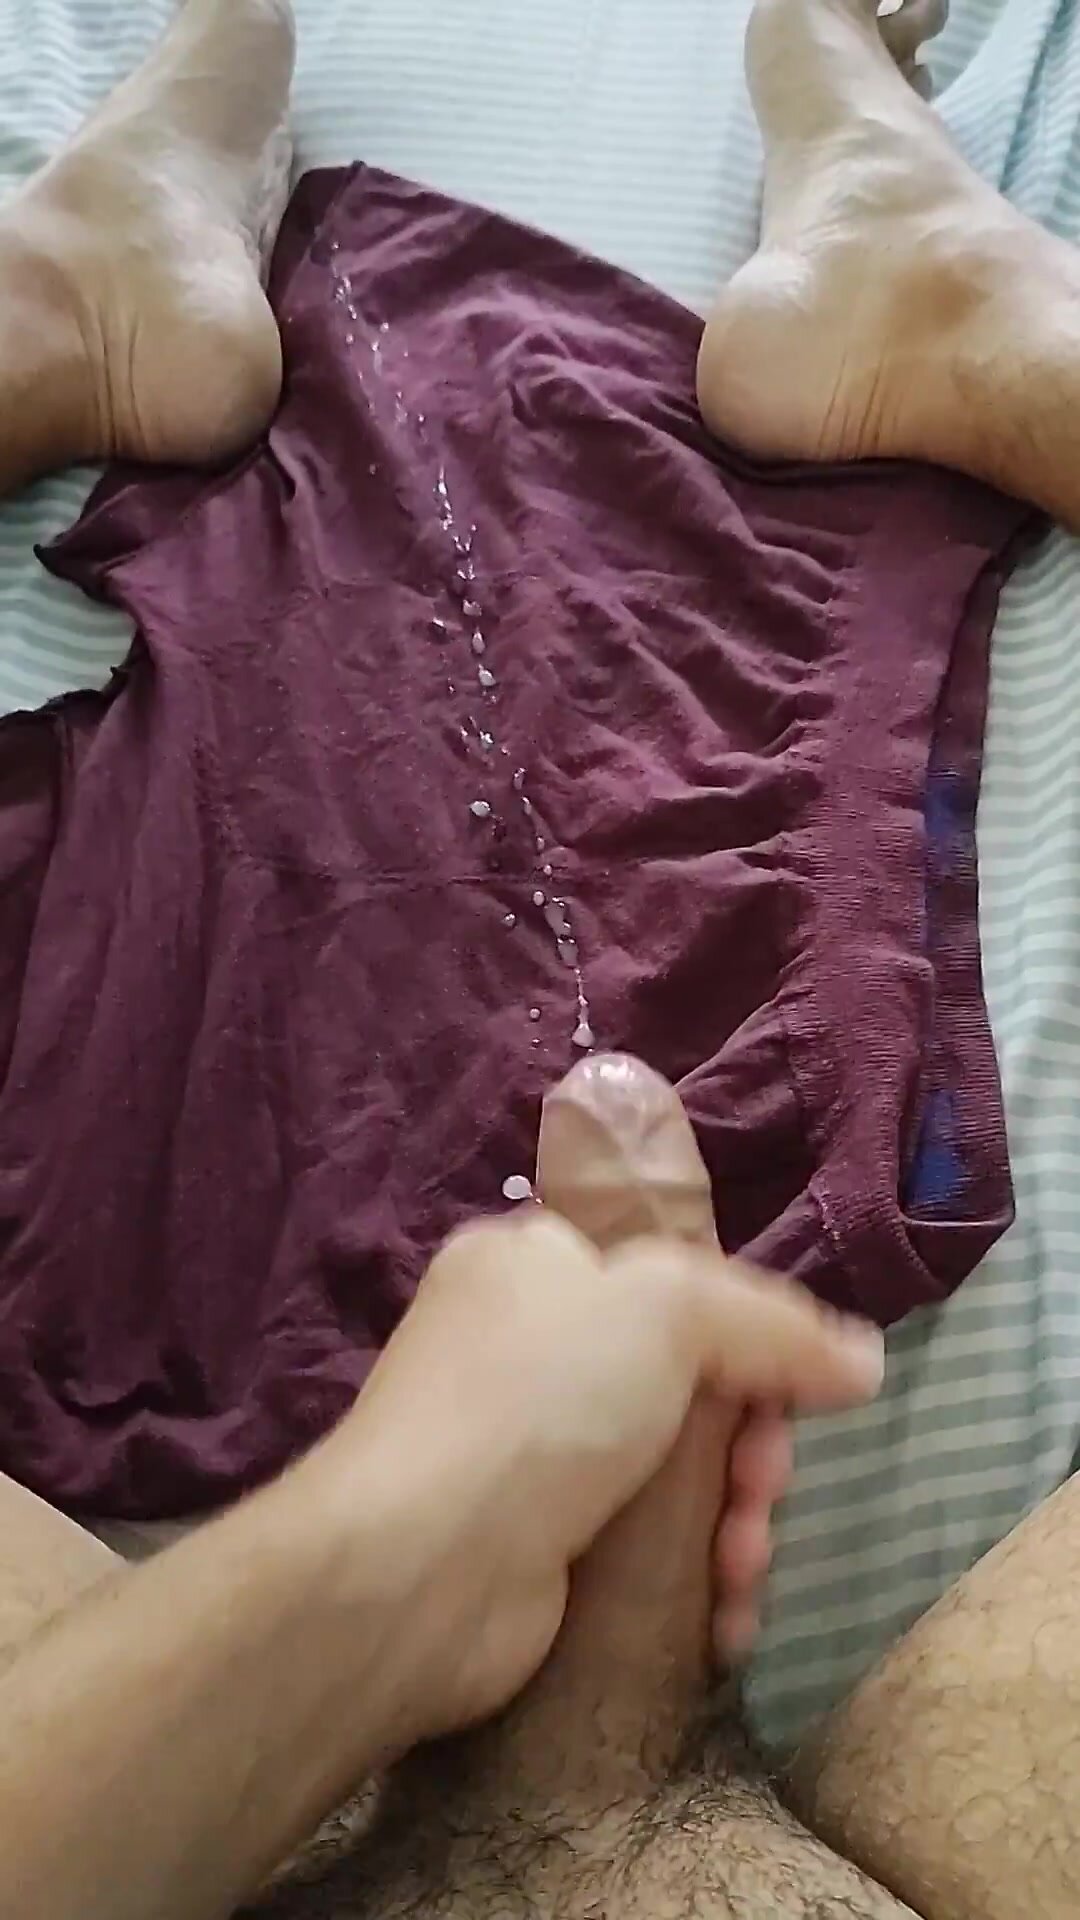 Cum on underwear showing feet